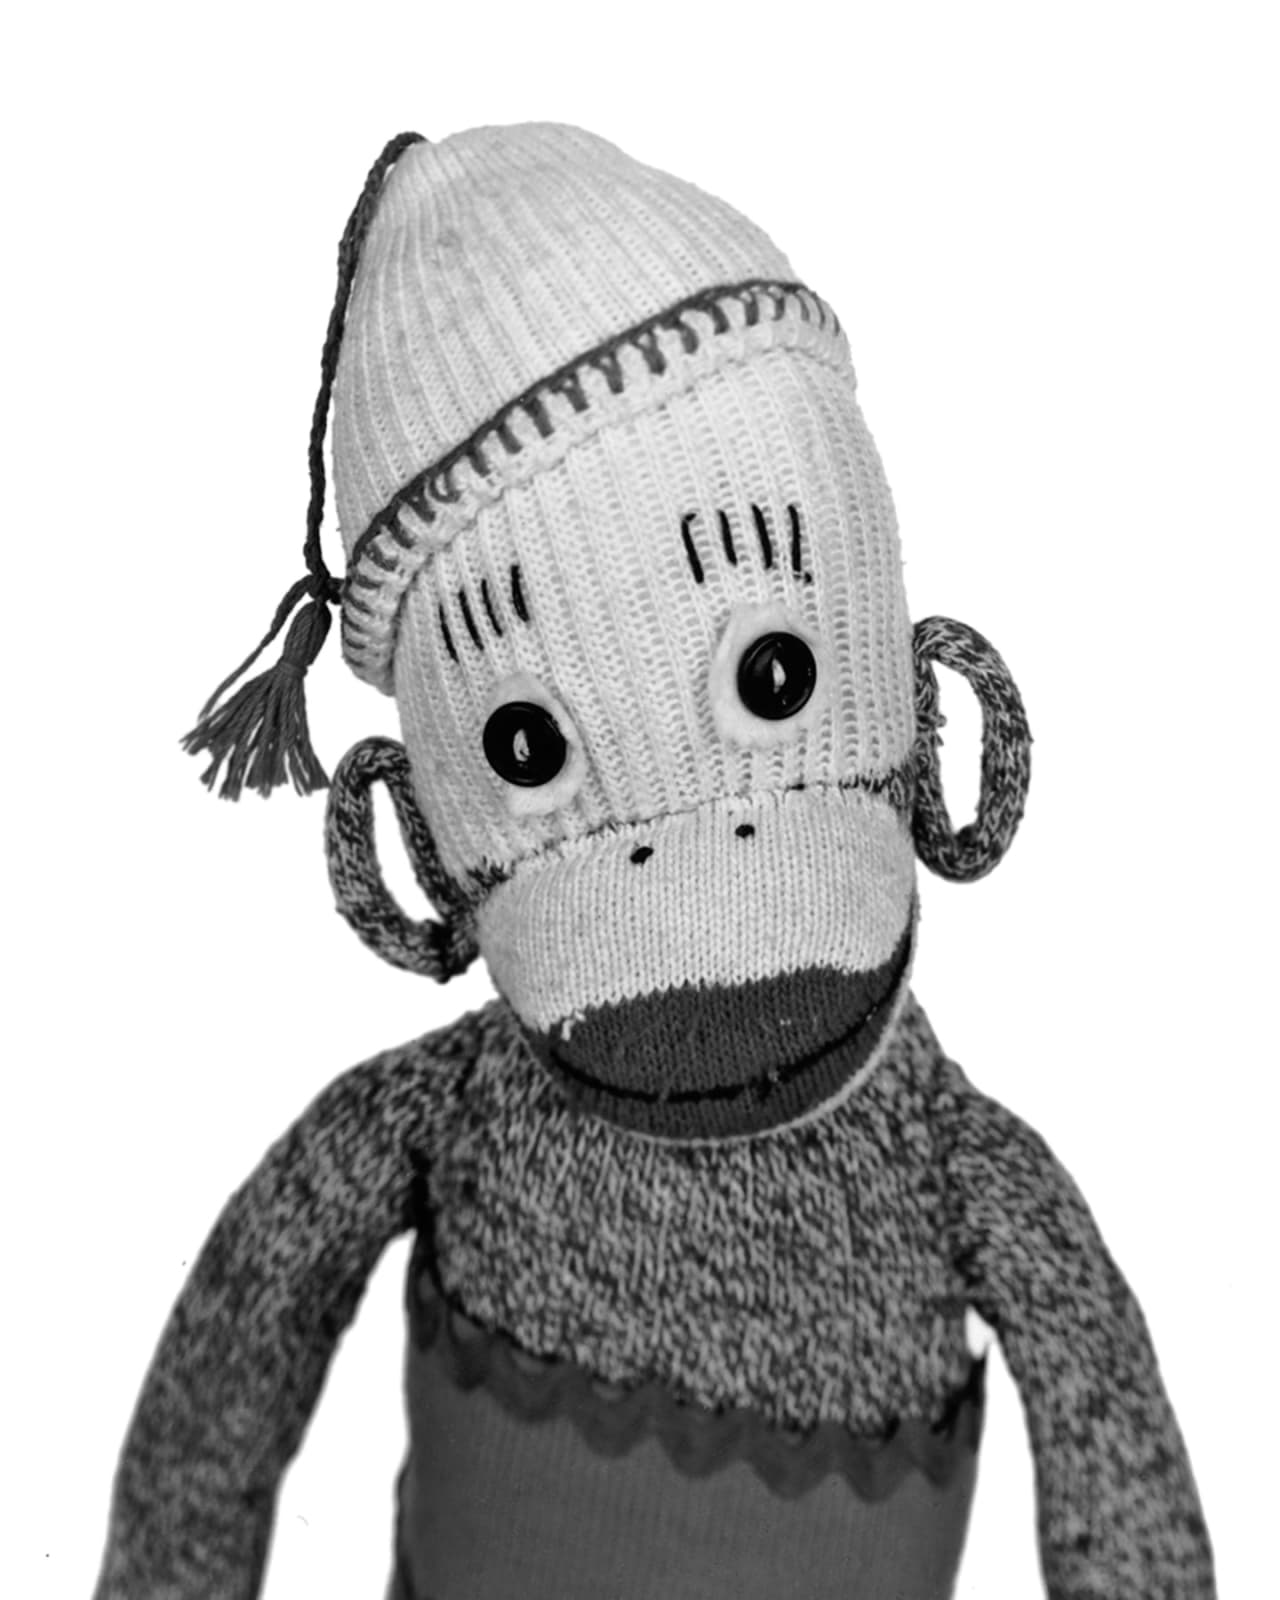 Arne Svenson, Sock Monkey 160, 2002